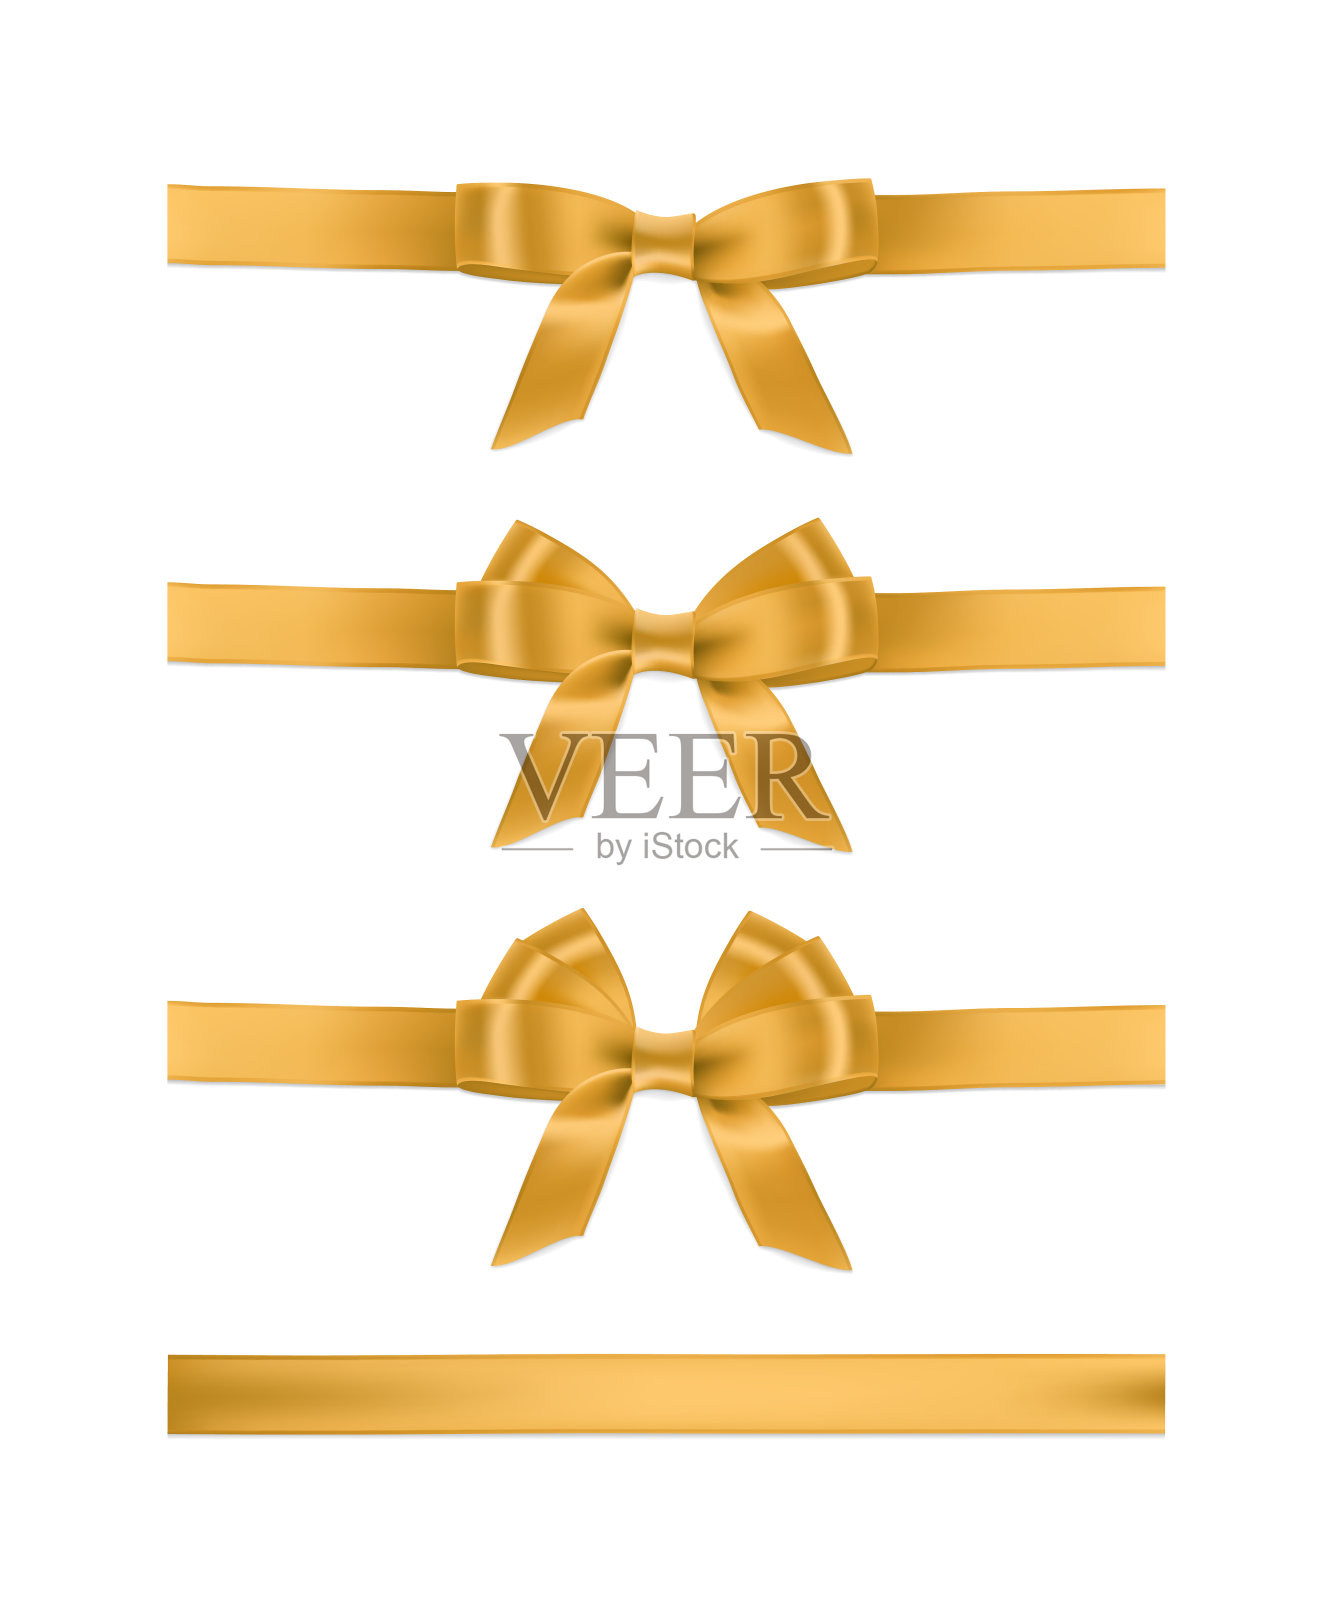 向量现实的金色丝带和蝴蝶结。一套节日设计元素。插画图片素材